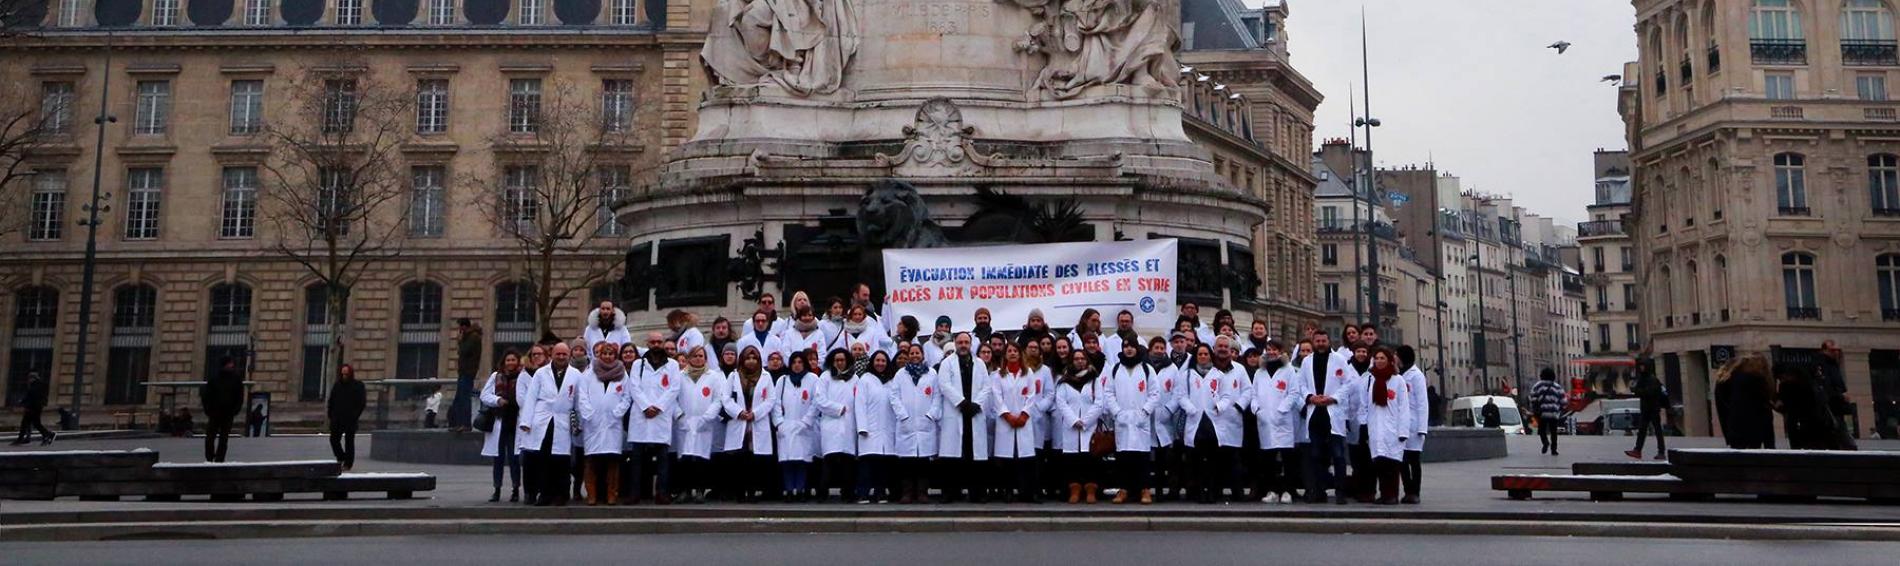 Ärzte der Welt protestiert weltweit für uneingeschränkten Zugang humanitärer Mitarbeiter in Syrien. Foto: Médecins du Monde